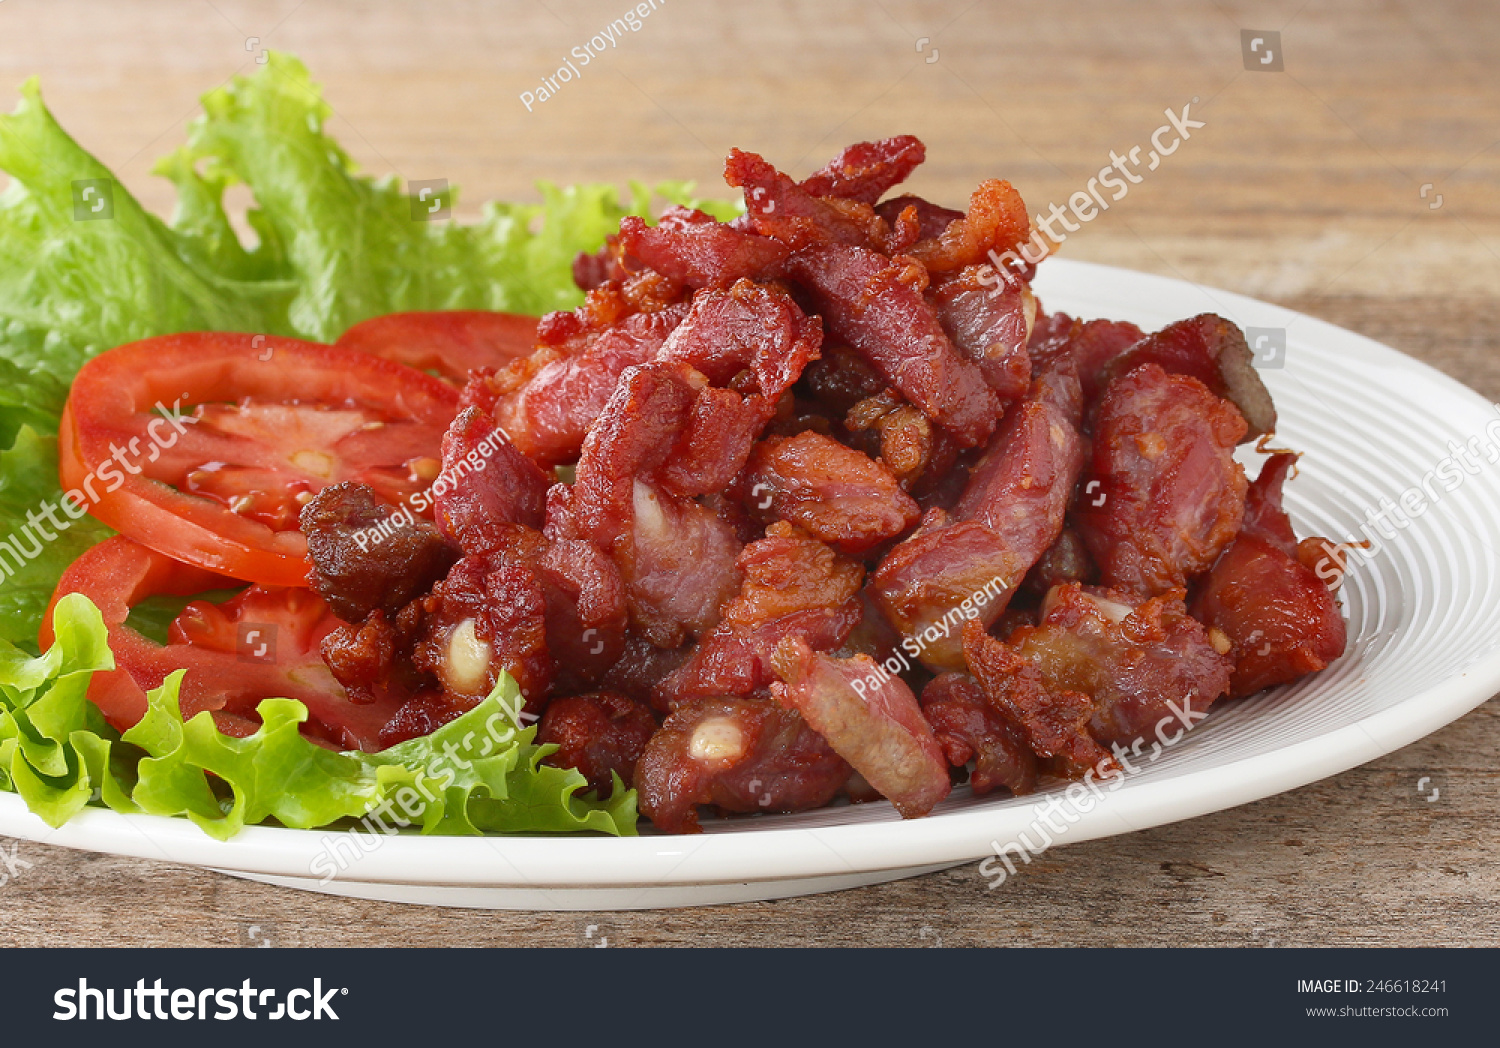 поджарка из свинины на сковороде фото